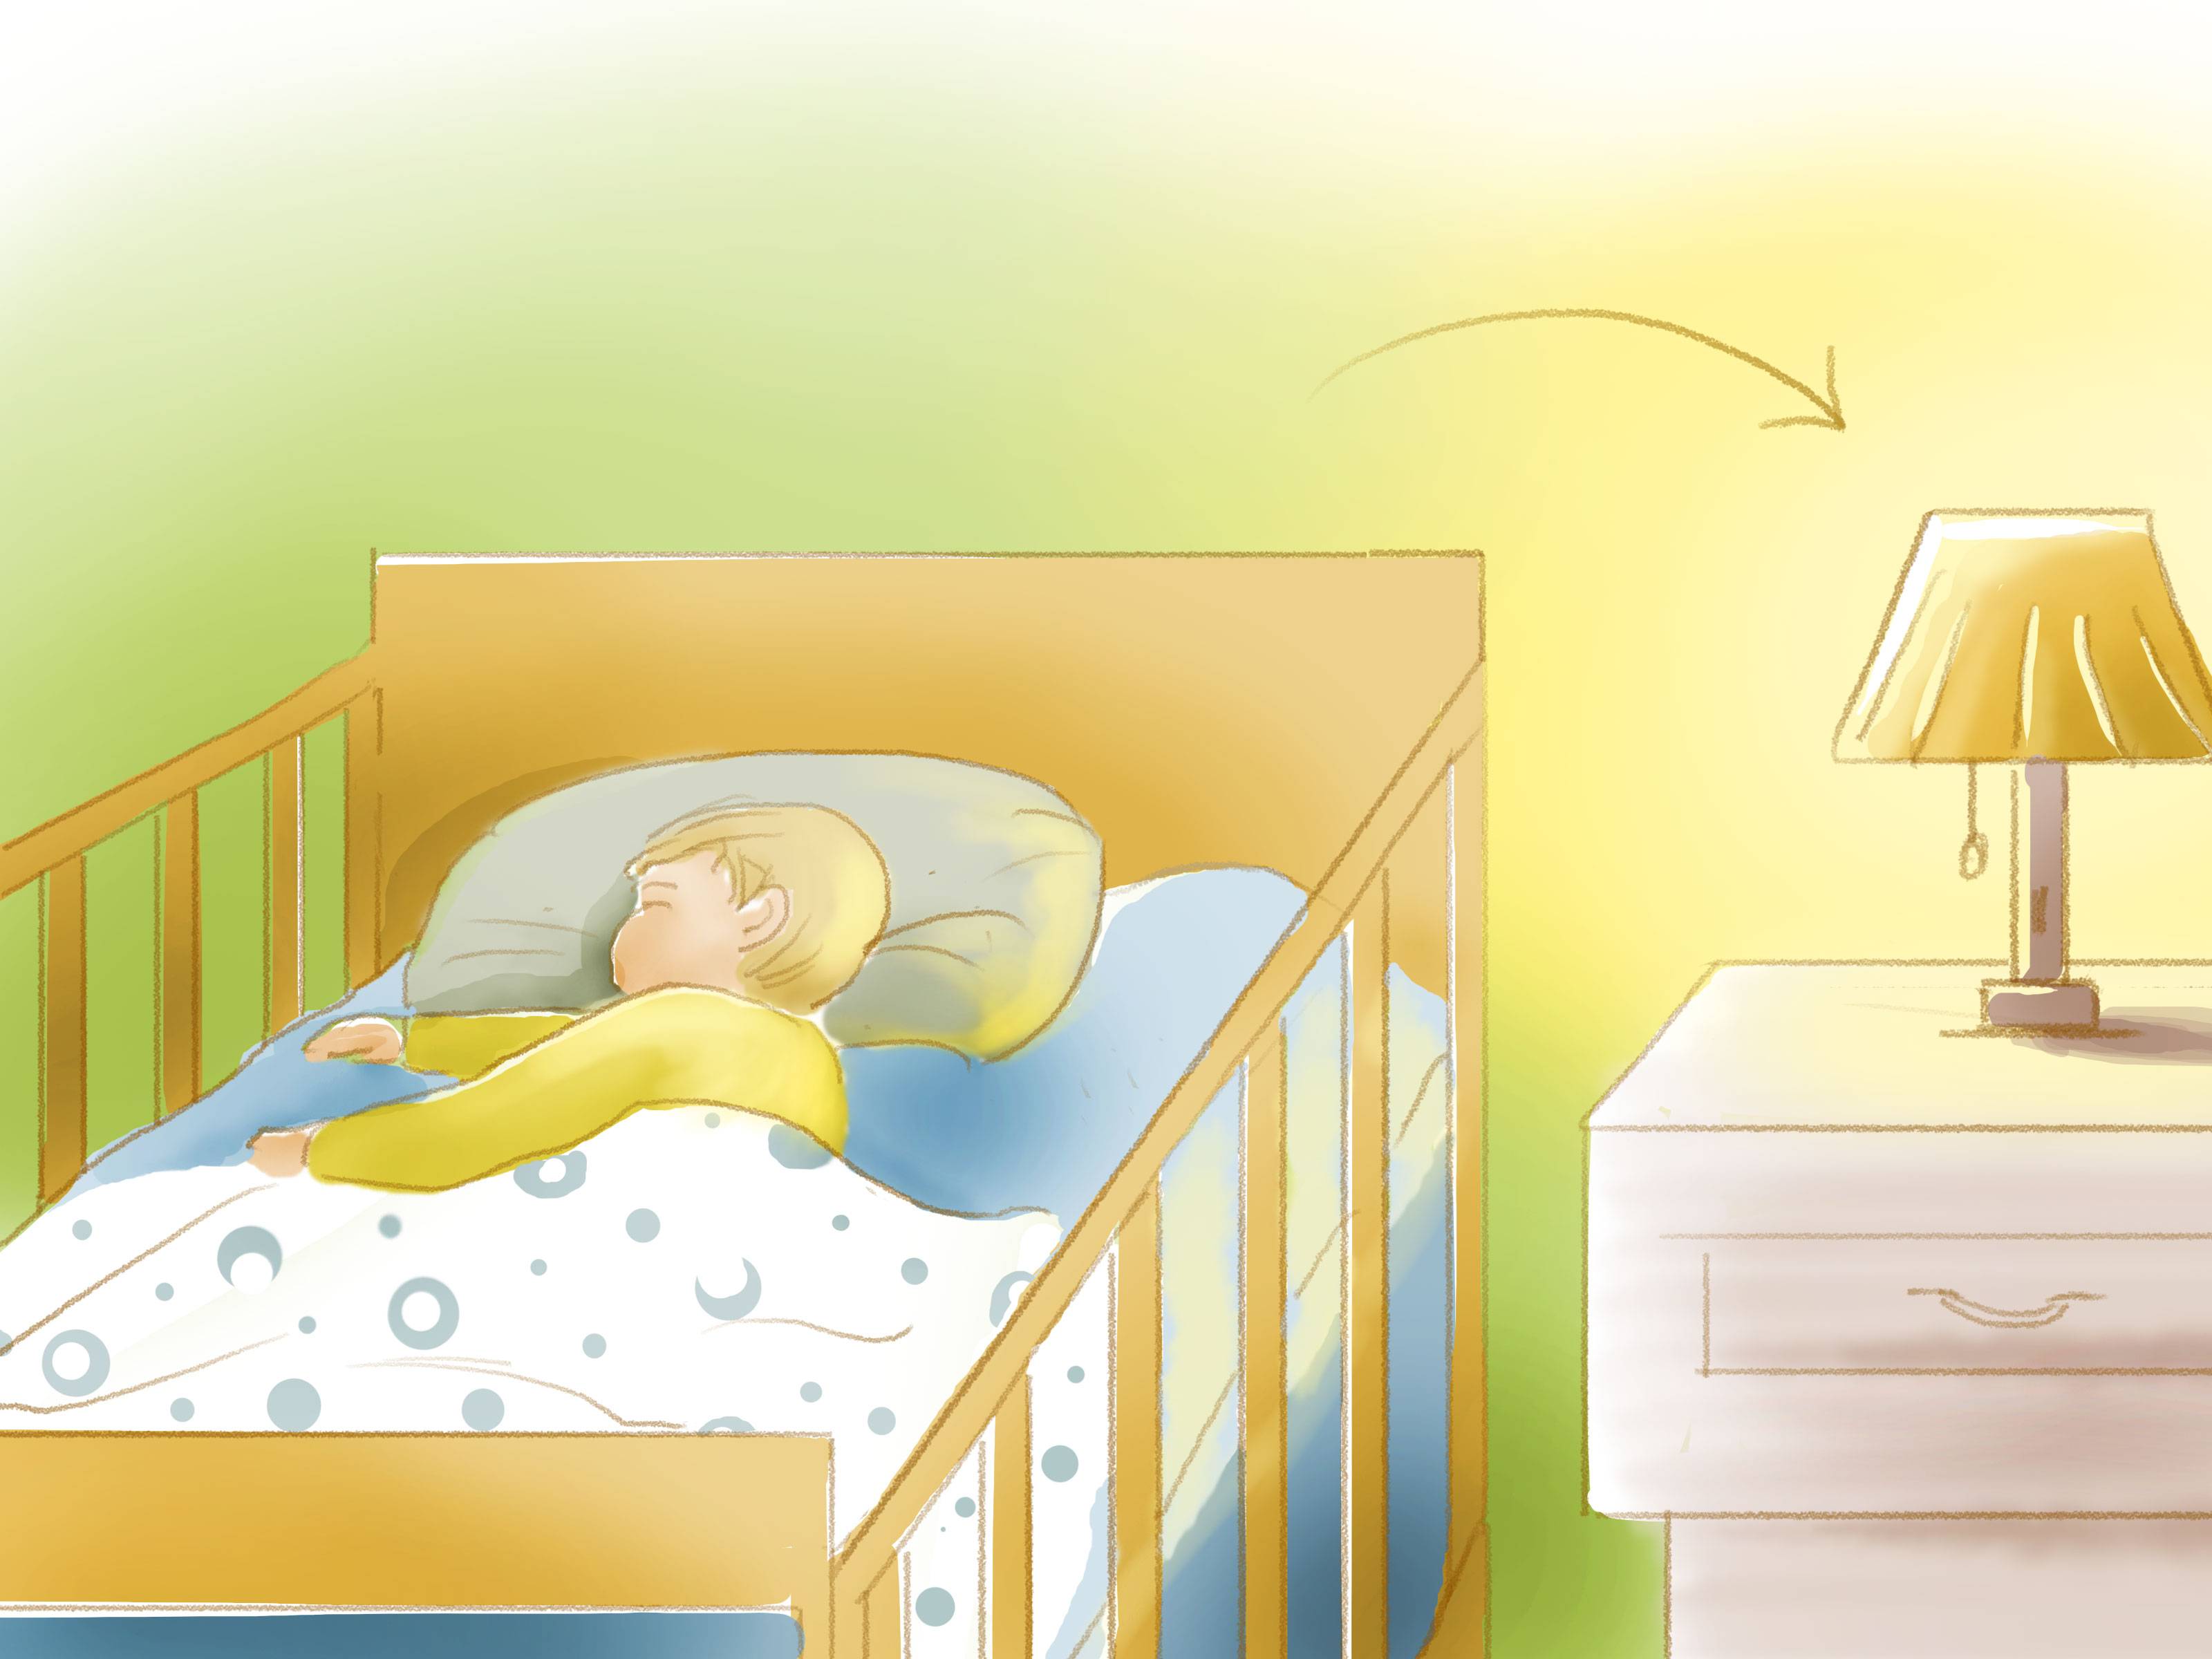 Как приучить ребенка спать в своей кроватке: советы психолога и 9 распространённых ошибок